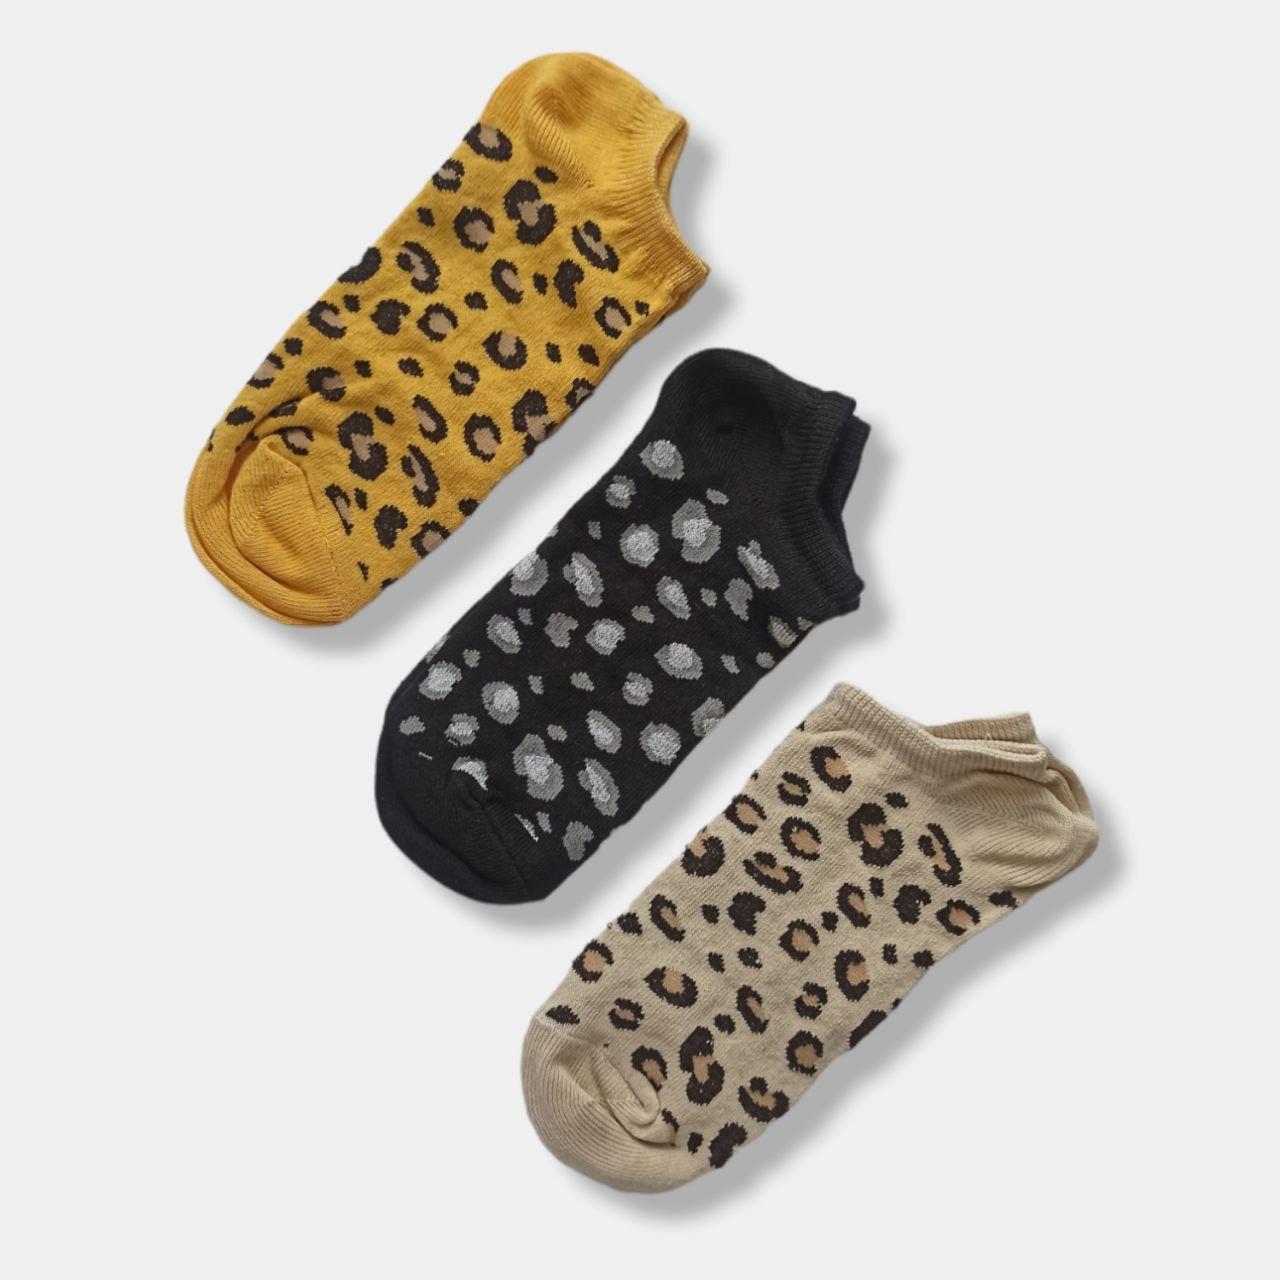 Короткі жіночі шкарпетки з леопардовим принтом р.-23-25(36-39) TwinSocks гірчиця